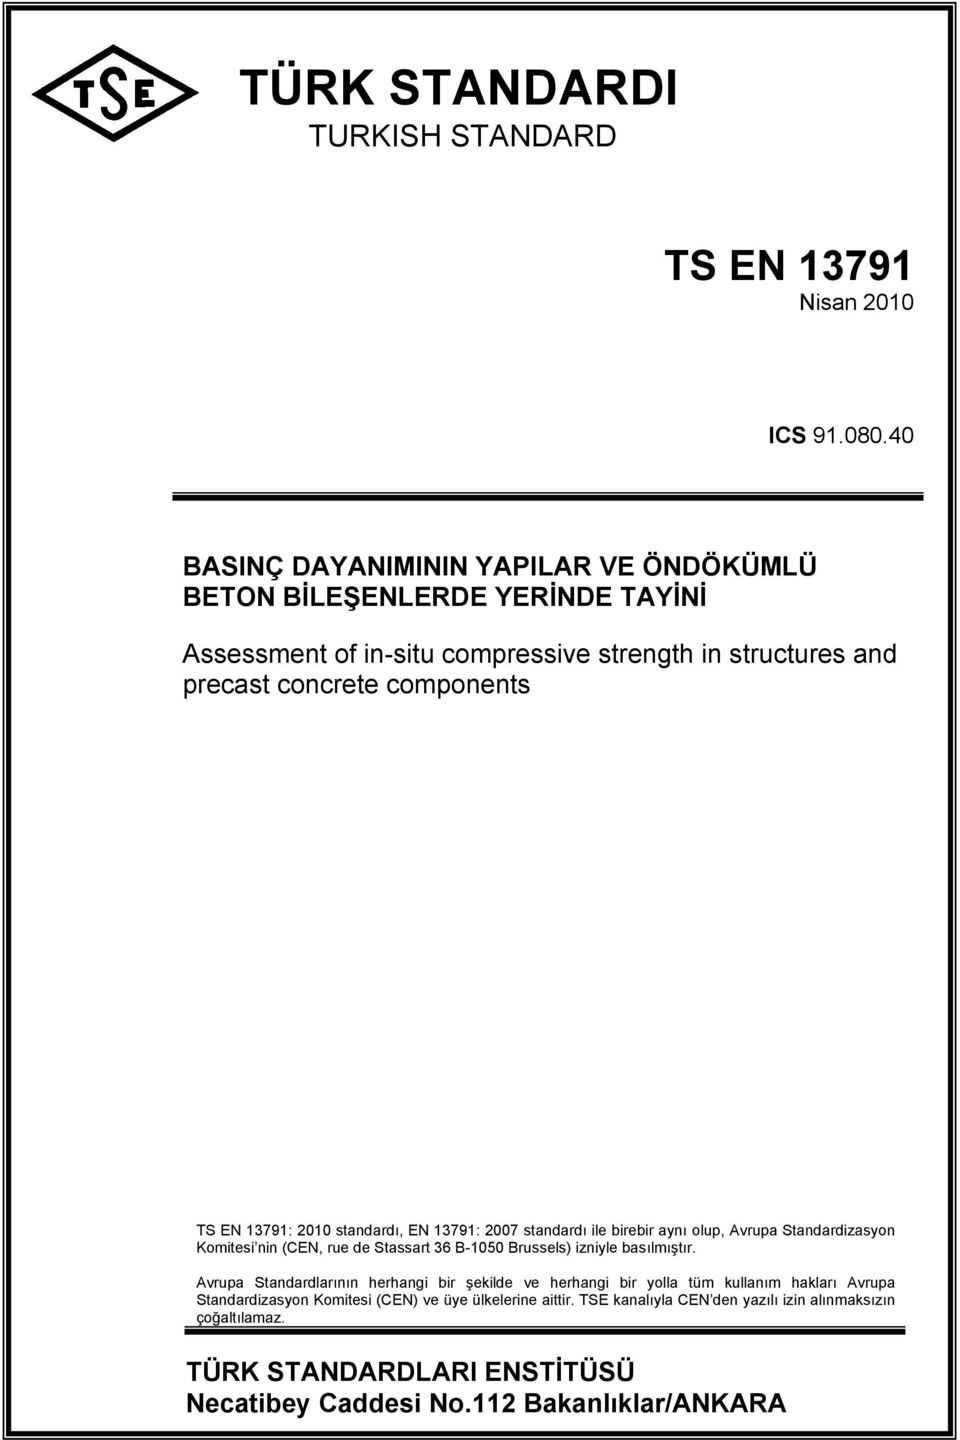 13791: 2010 standardı, EN 13791: 2007 standardı ile birebir aynı olup, Avrupa Standardizasyon Komitesi nin (CEN, rue de Stassart 36 B-1050 Brussels) izniyle basılmıştır.